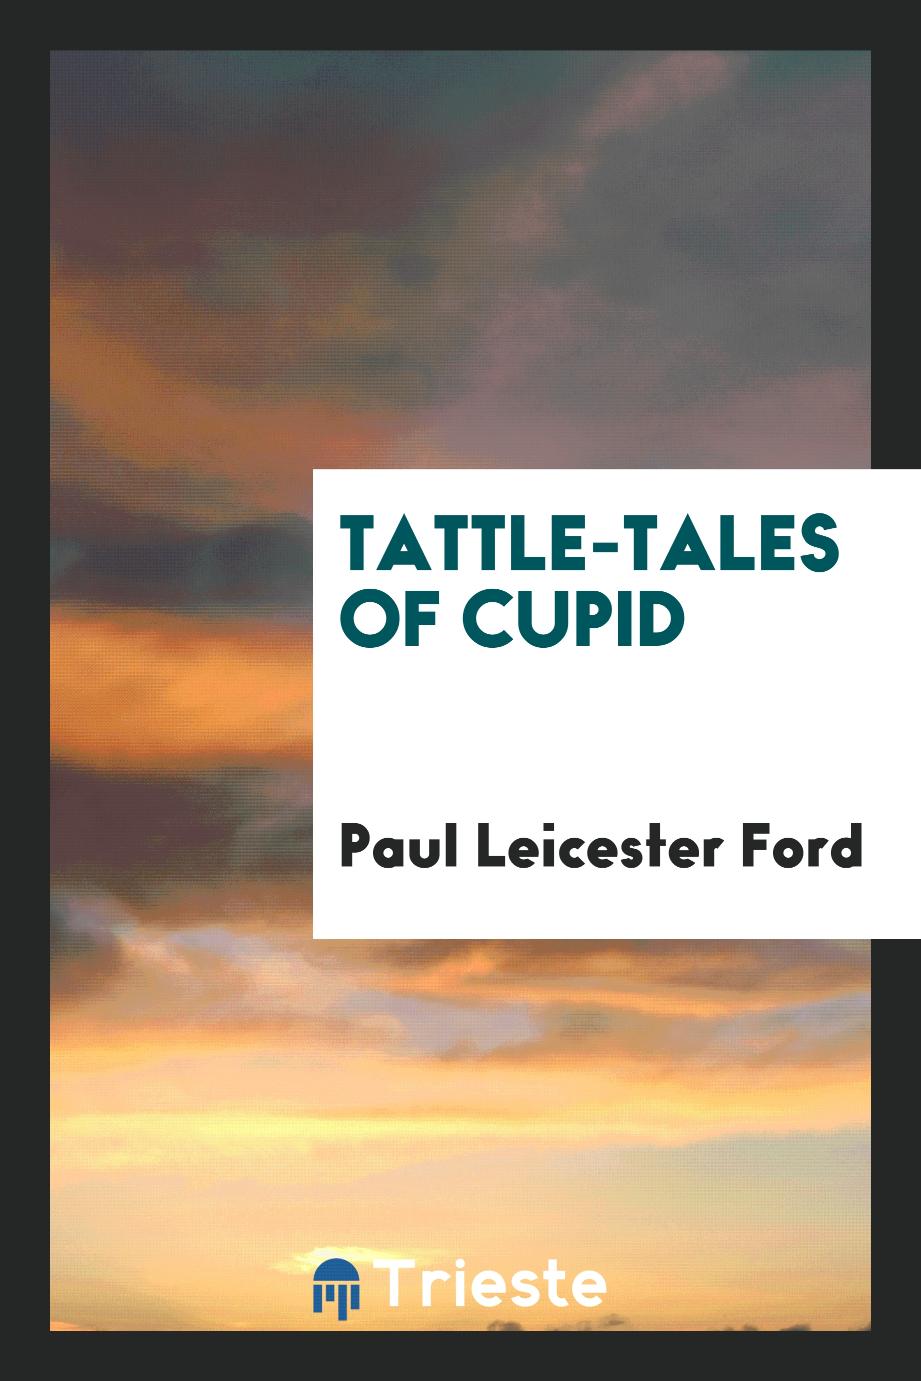 Tattle-tales of Cupid